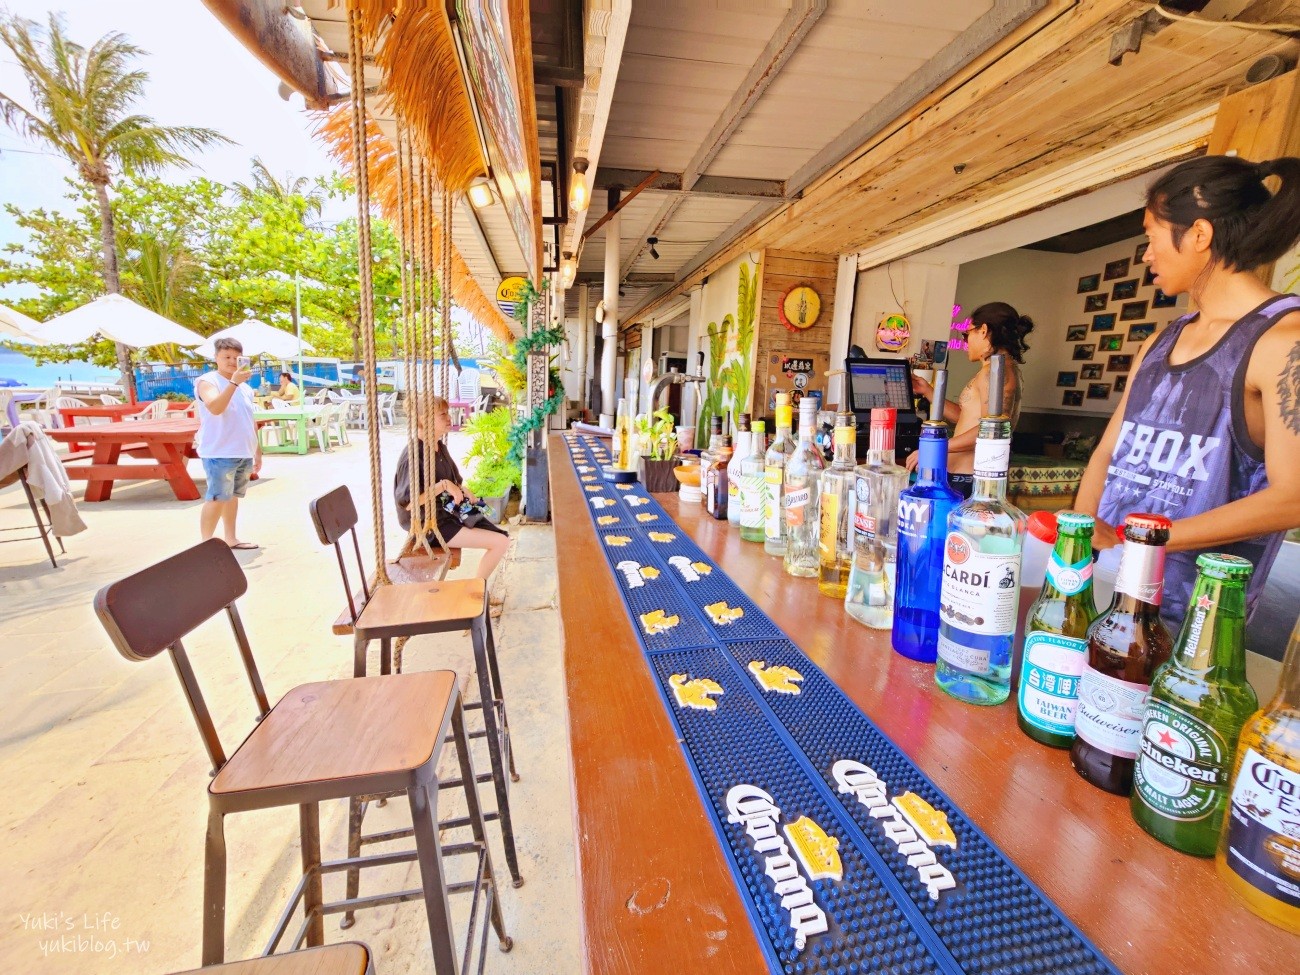 墾丁南灣野海子 WILD KID BAR，海景第一排景觀餐廳咖啡酒吧、峇里島風盪鞦韆氣氛滿分！ - yuki.tw